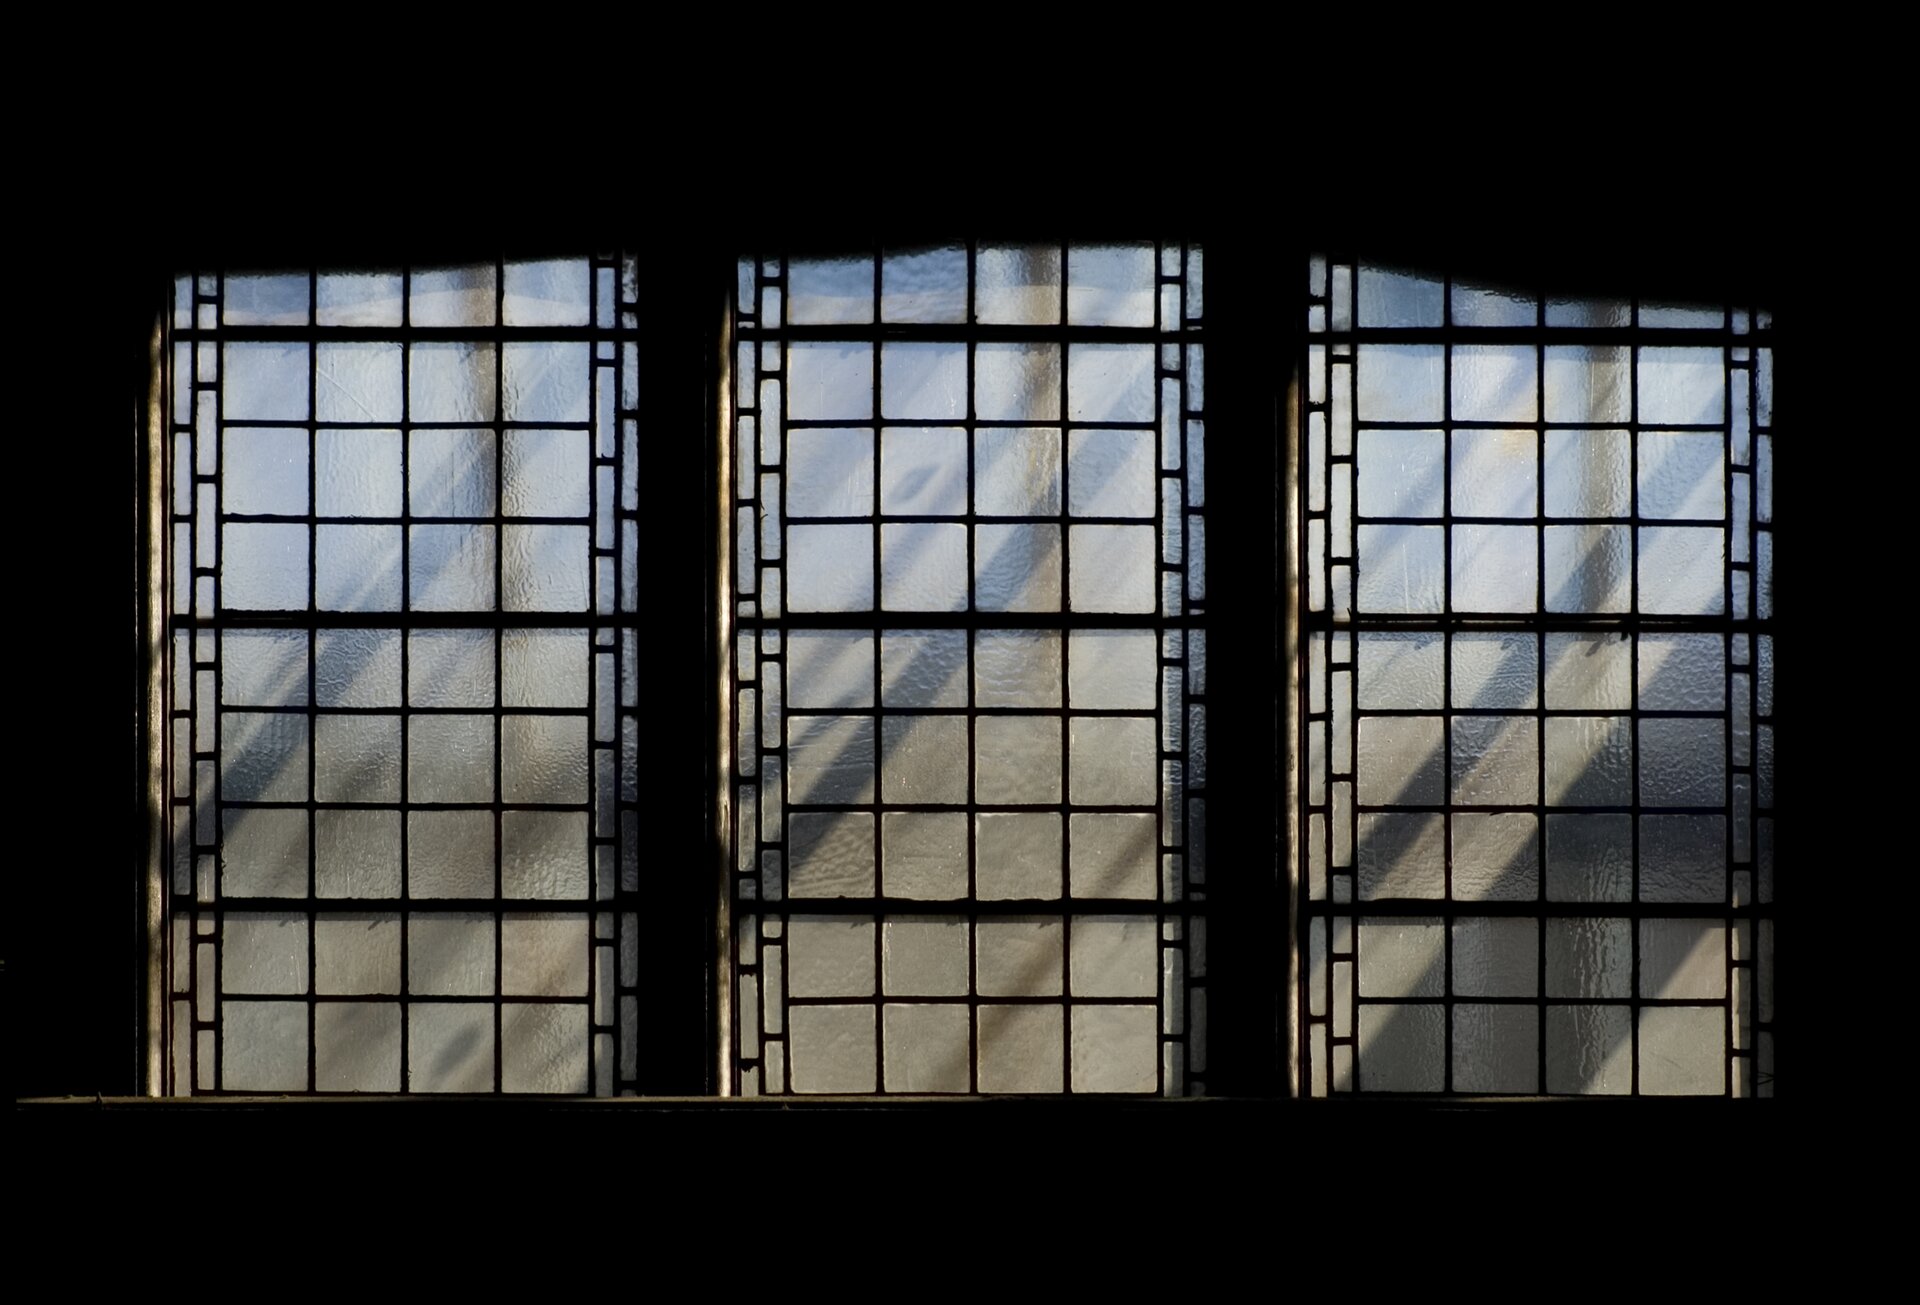 Ilustracja przedstawia refleks świetlny. Ukazuje trzy znajdujące się obok siebie okna, dzielone na mniejsze, kwadratowe pola. Szkiełka witraży są matowe. Odbijają się na nich refleksy, tworząc poprzeczne cienie.